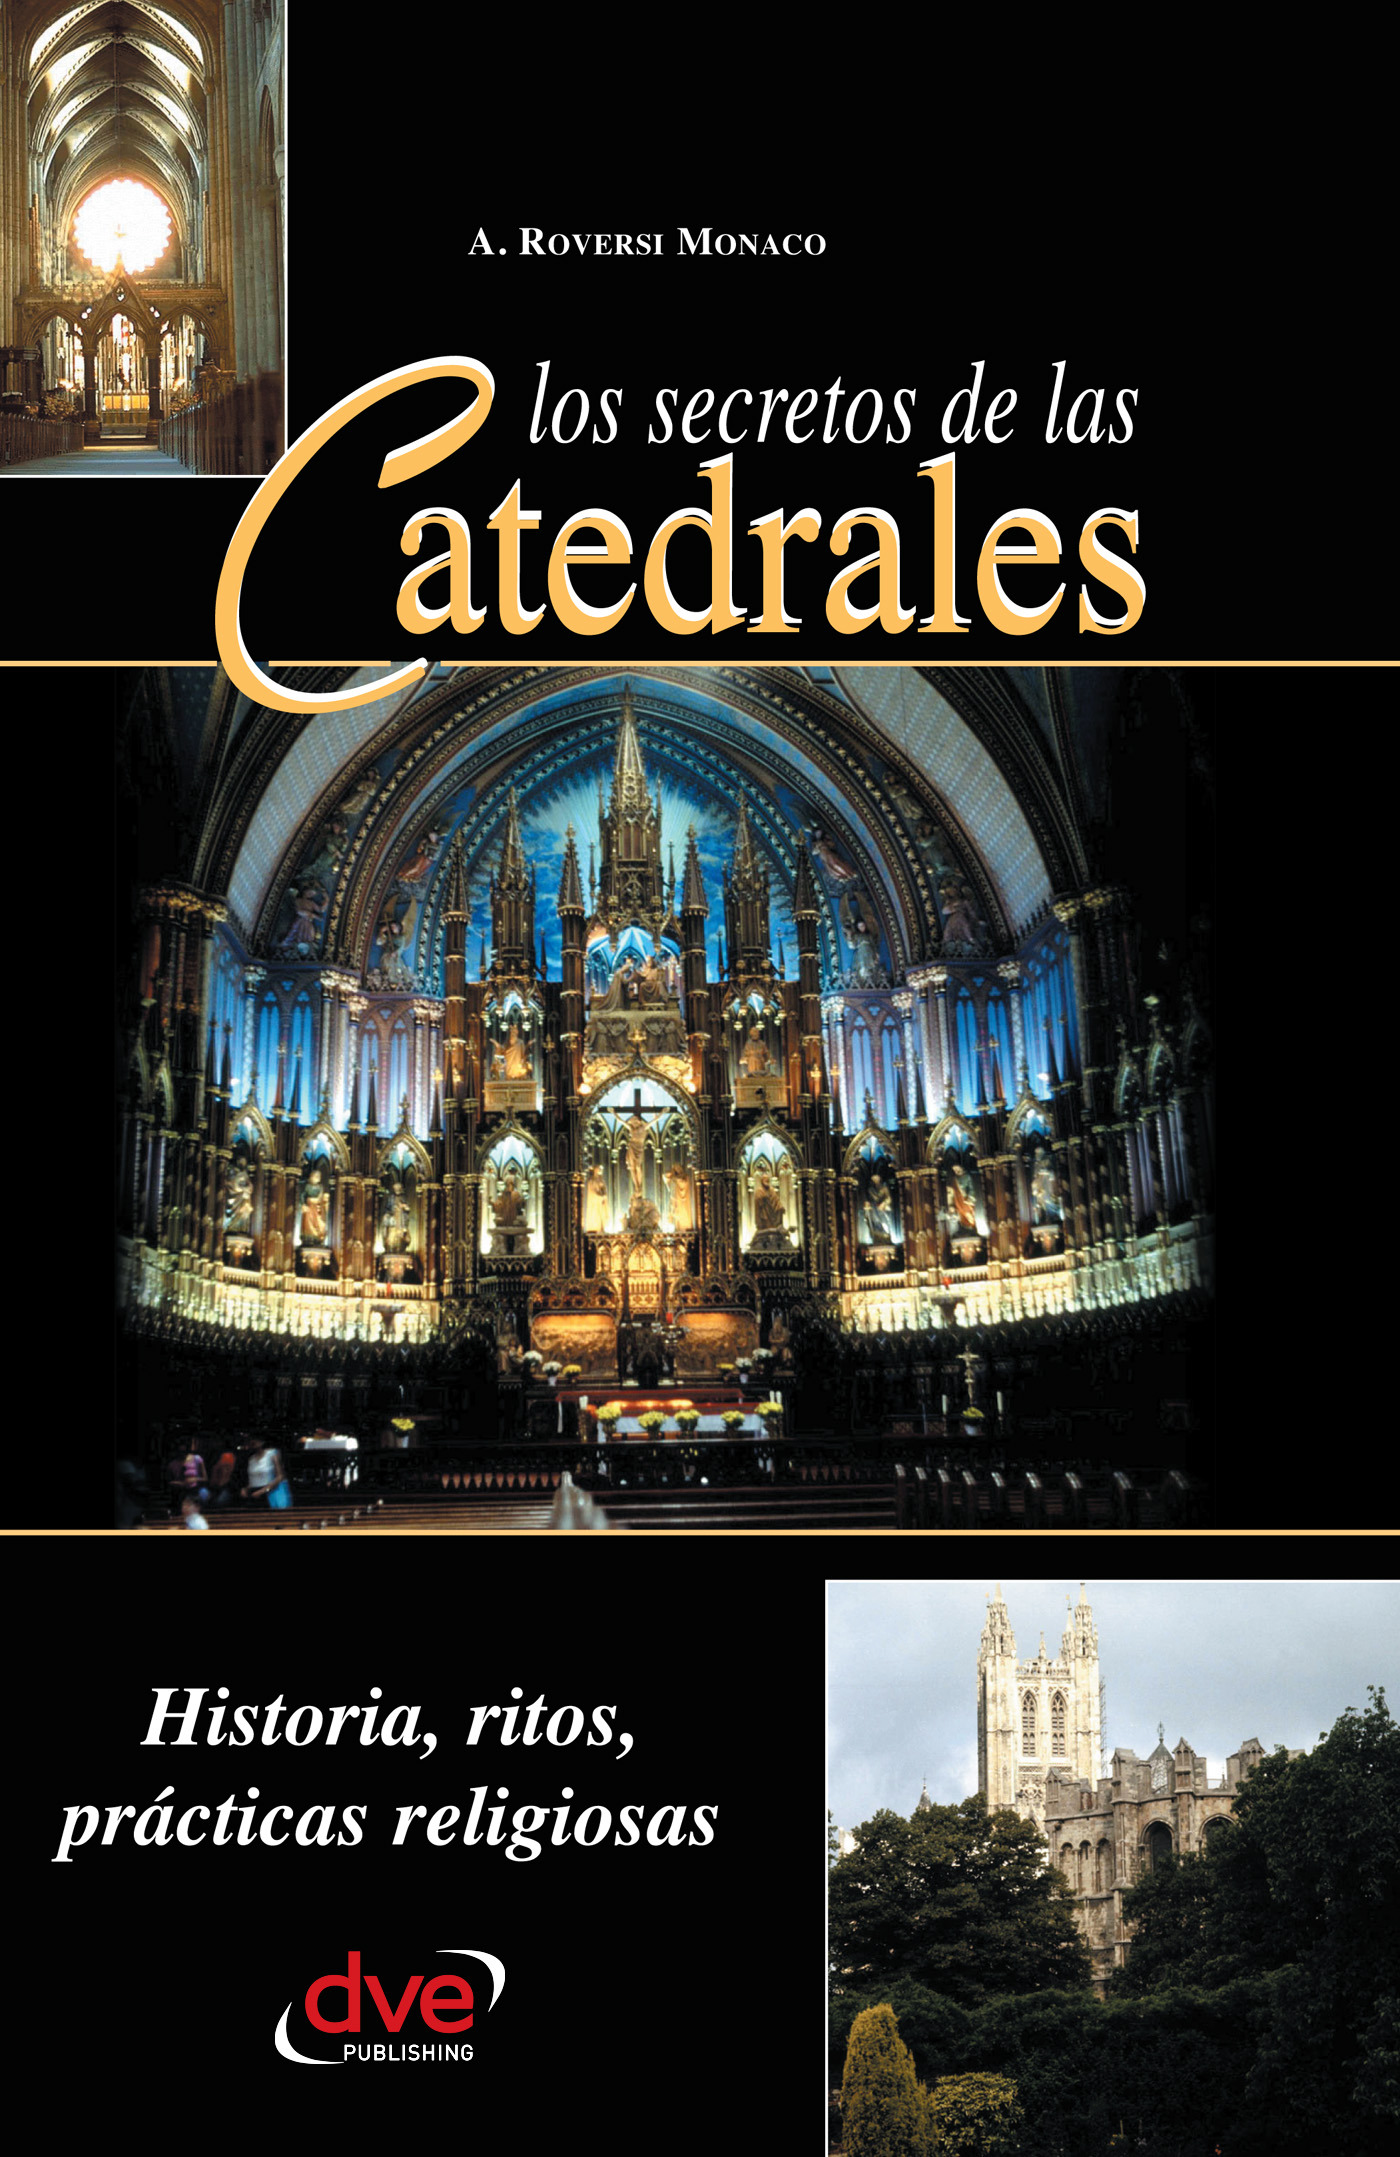 Monaco, A. Roversi - Los secretos de las catedrales. Historia, ritos, prácticas religiosas, e-bok